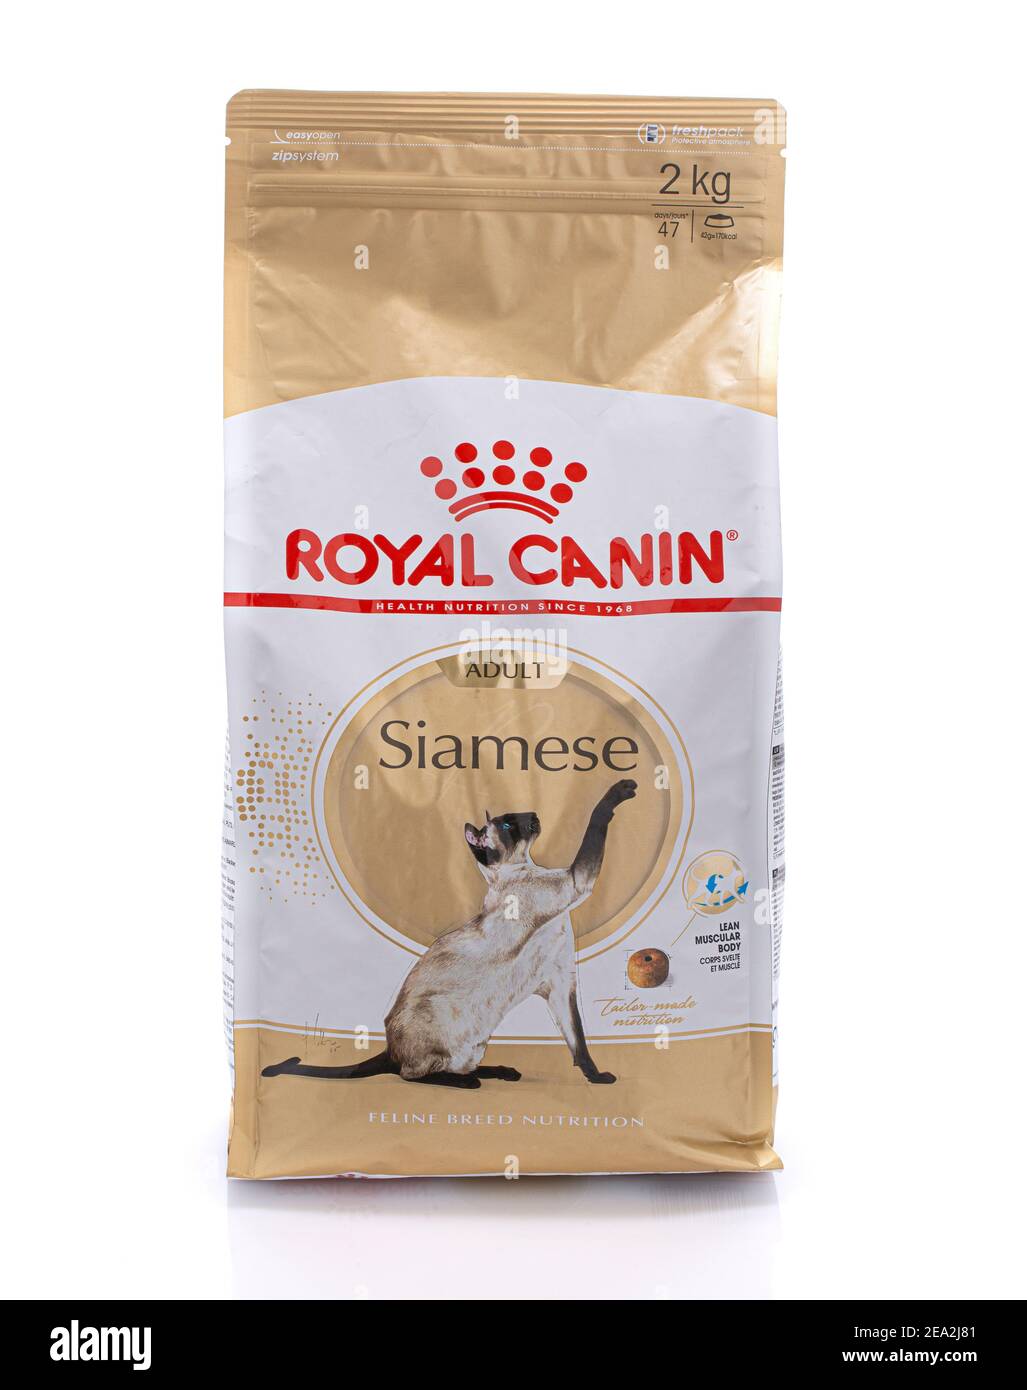 SWINDON, Großbritannien - 2. FEBRUAR 2021: Paket mit Royal Canin Siam Adult Feline Nutrition Katzenfutter auf weißem Hintergrund Stockfoto